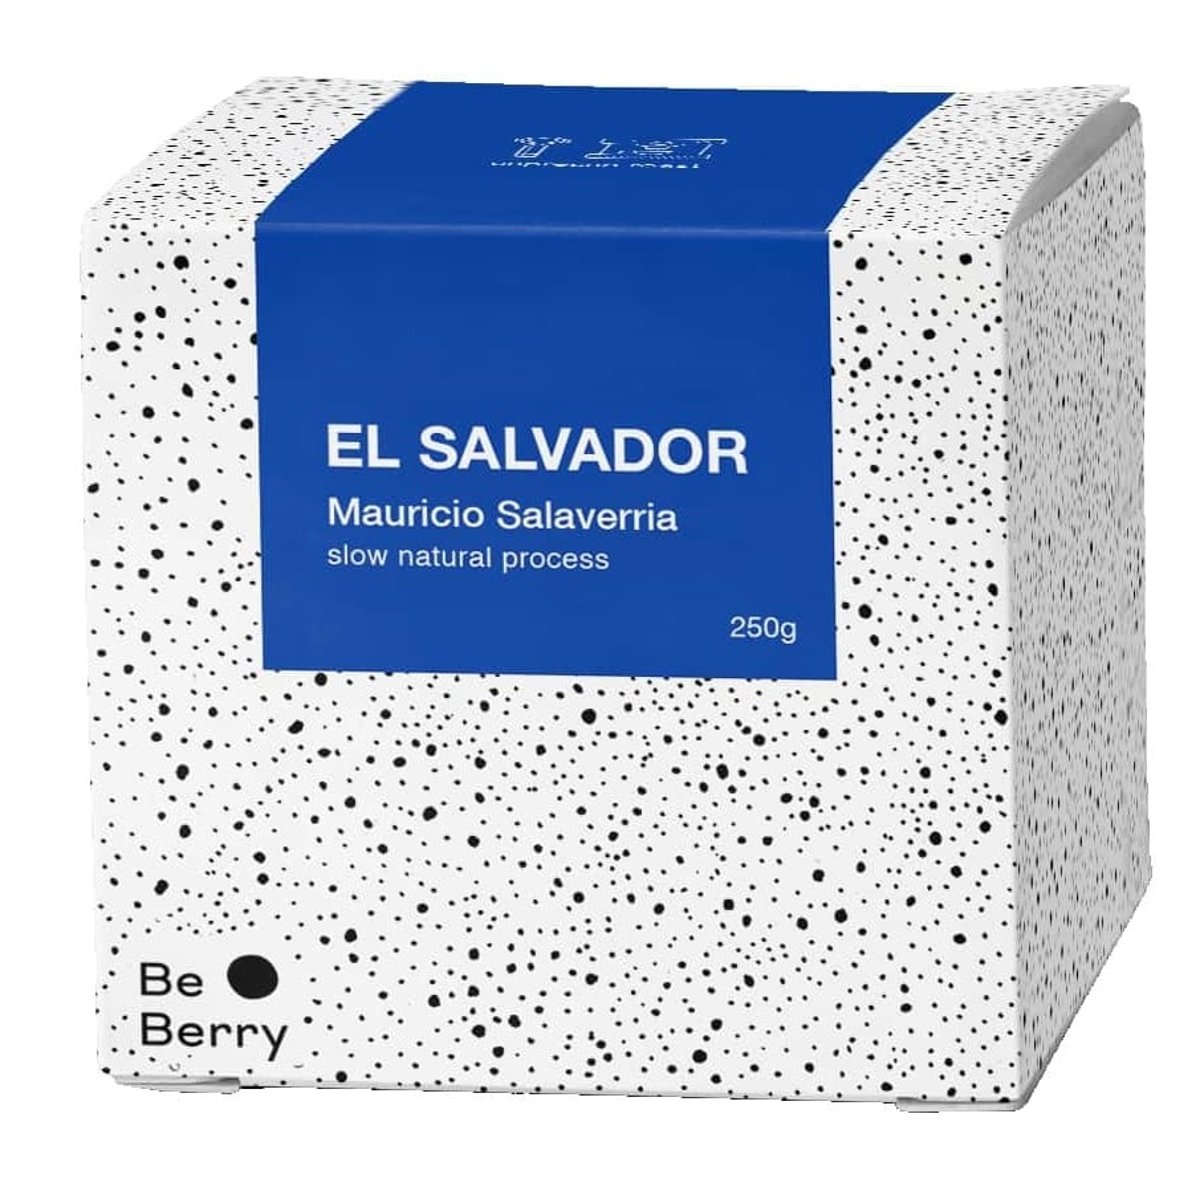 BeBerry Coffee El Salvador Mauricio Salaverria